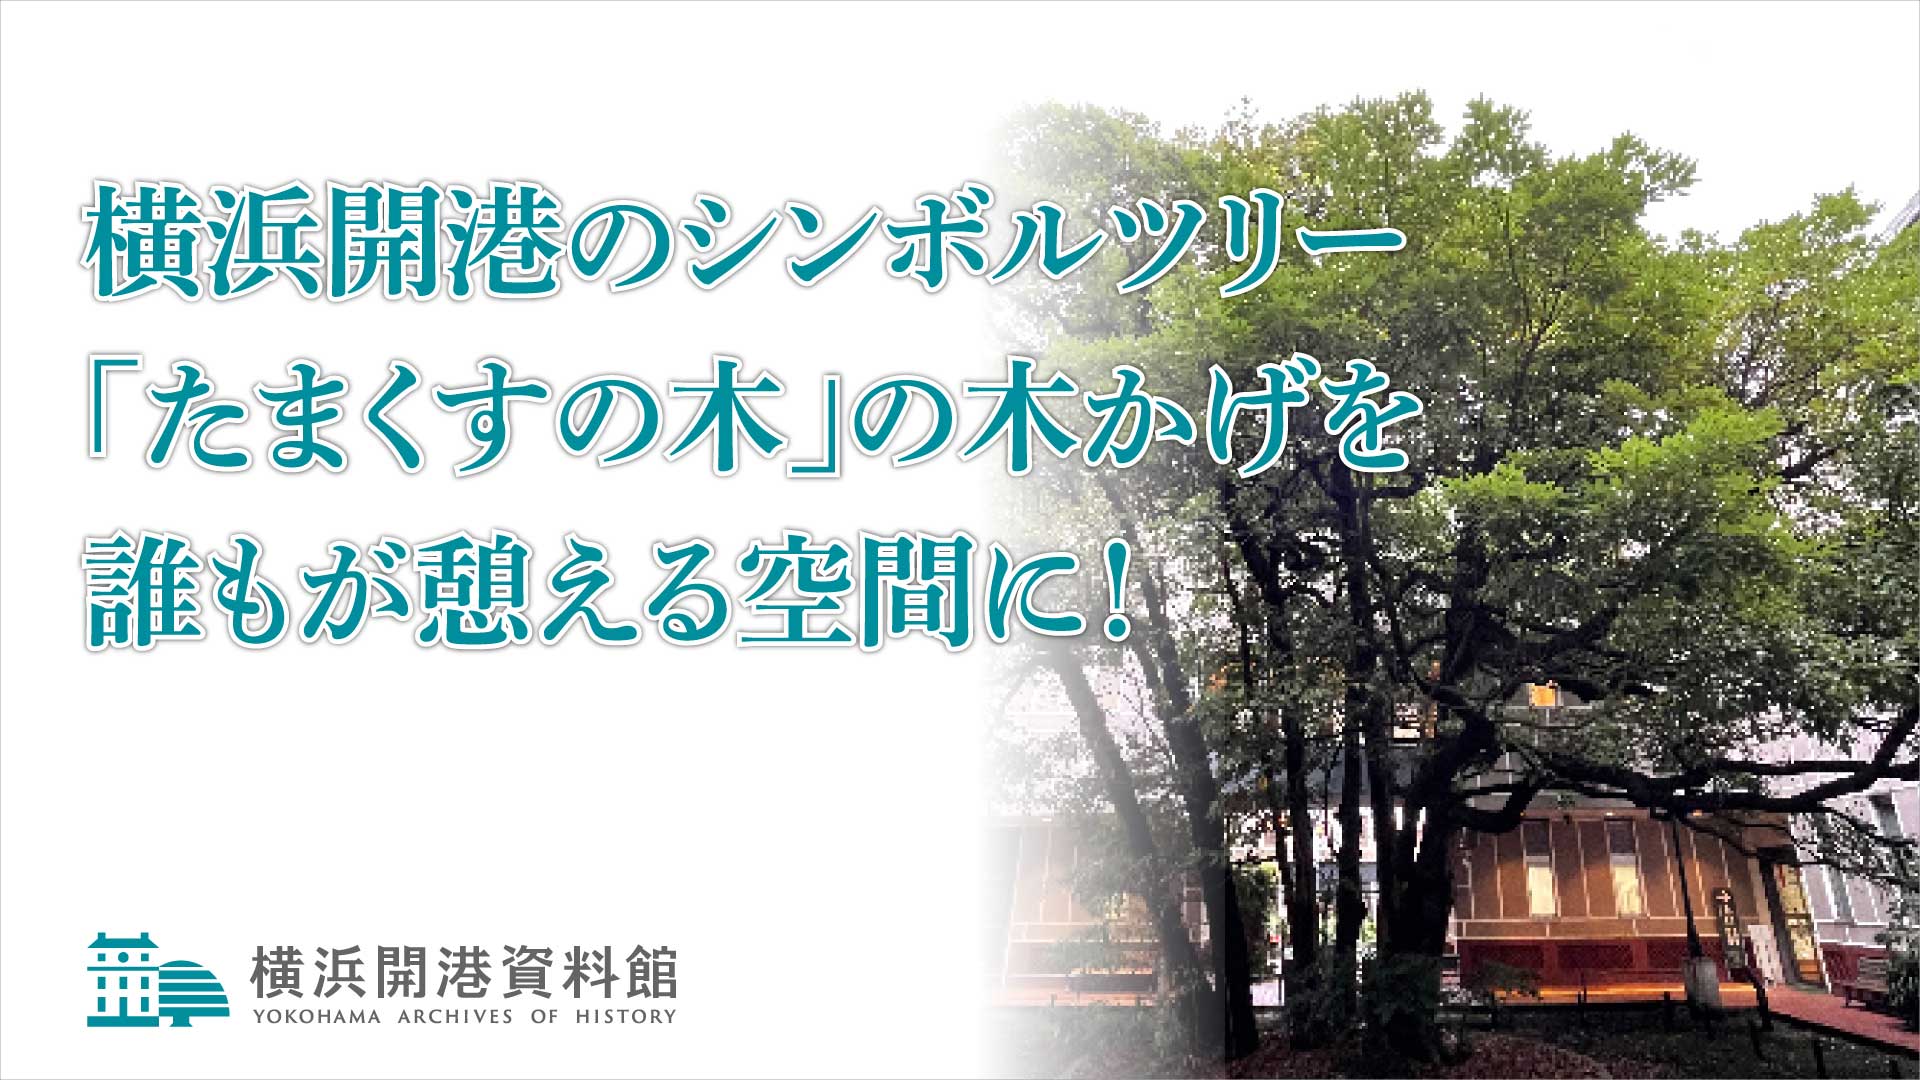 横浜開港資料館 横浜開港のシンボルツリー「たまくすの木」の木かげを誰もが憩える空間に！クラウドファンディングプロジェクト 5/21(火)から開始！ 